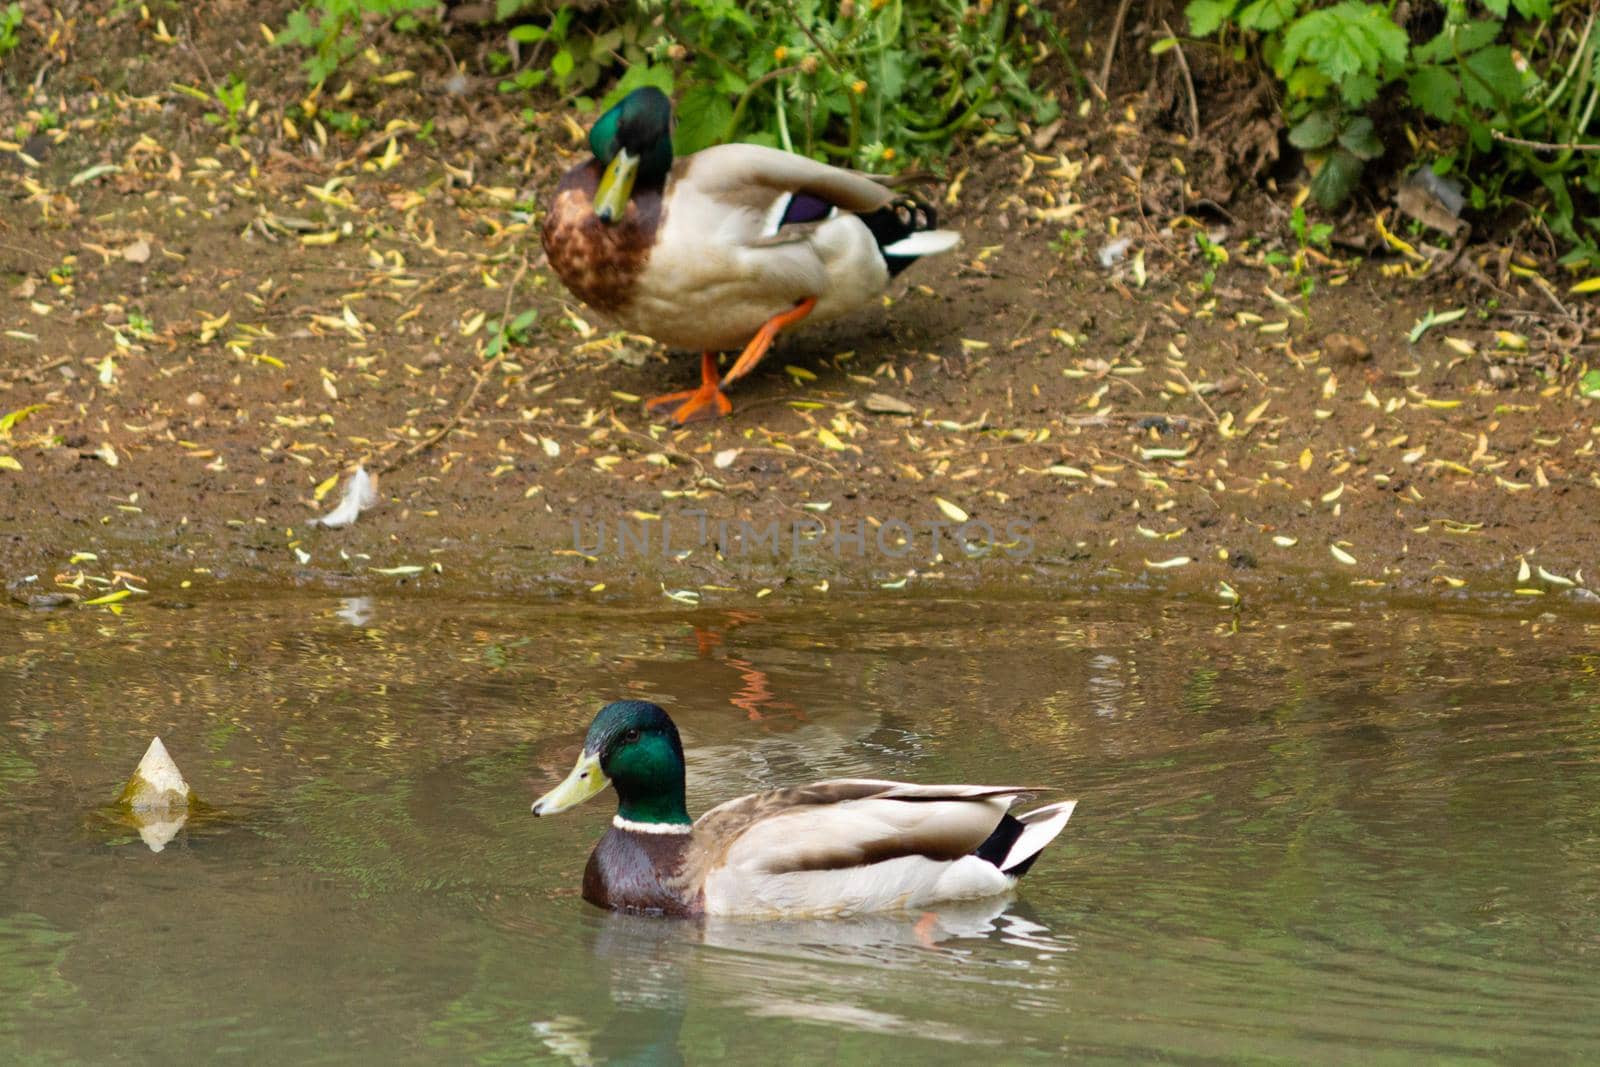 A flock of ducks in a water by SorokinNikita